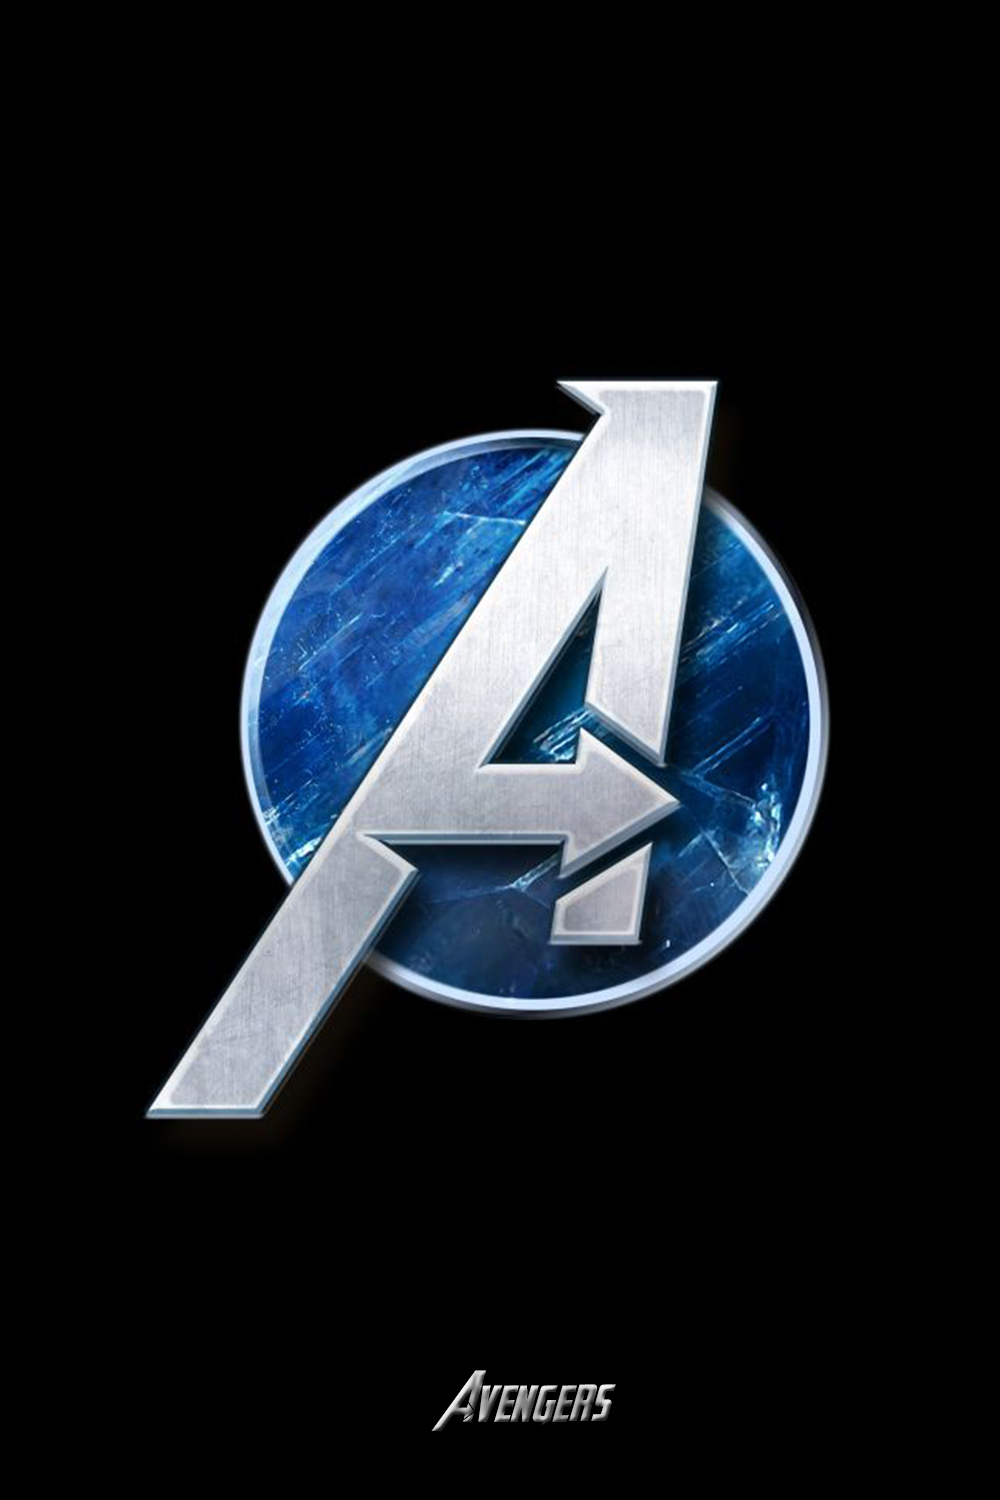 avengers wallpaper. Avengers wallpaper, Logo wallpaper hd, Avengers